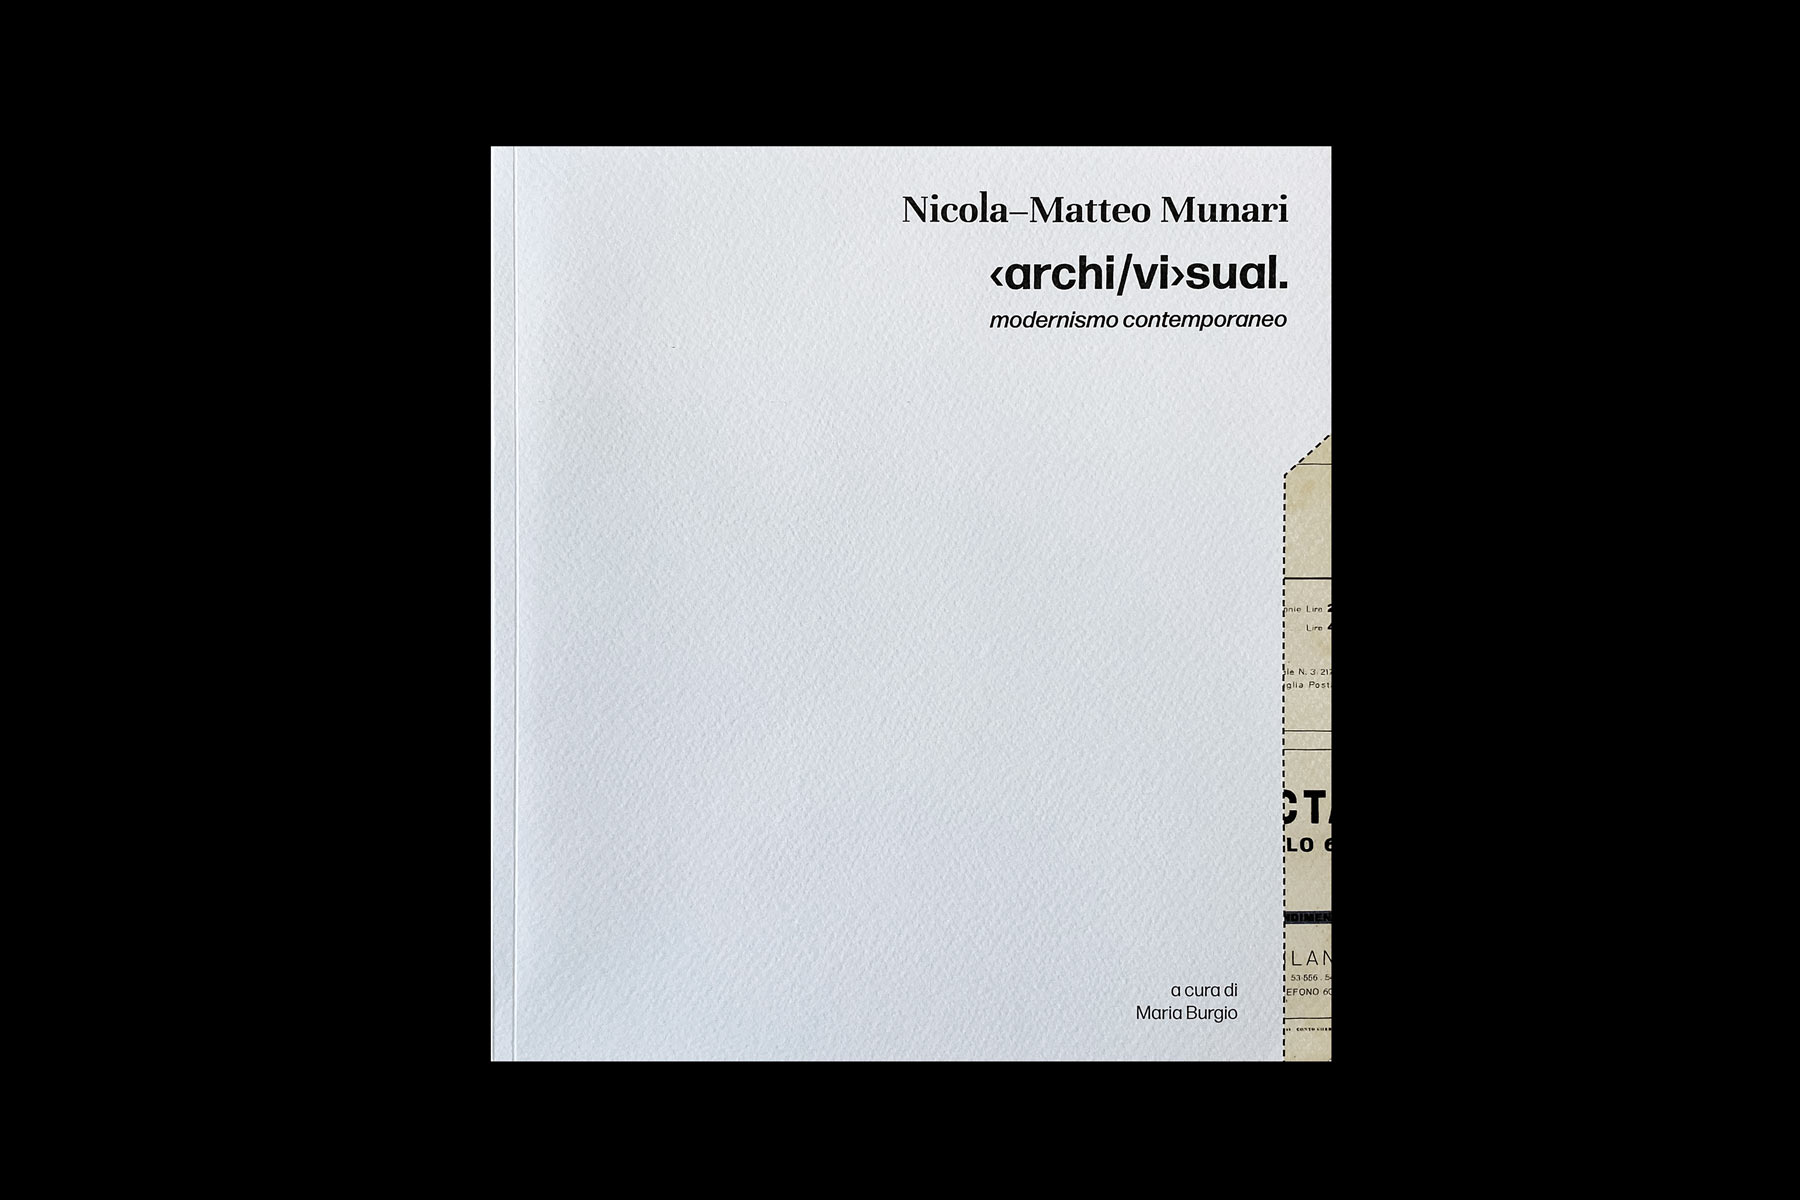 nicola-matteo munari archivisual modernismo contemporaneo